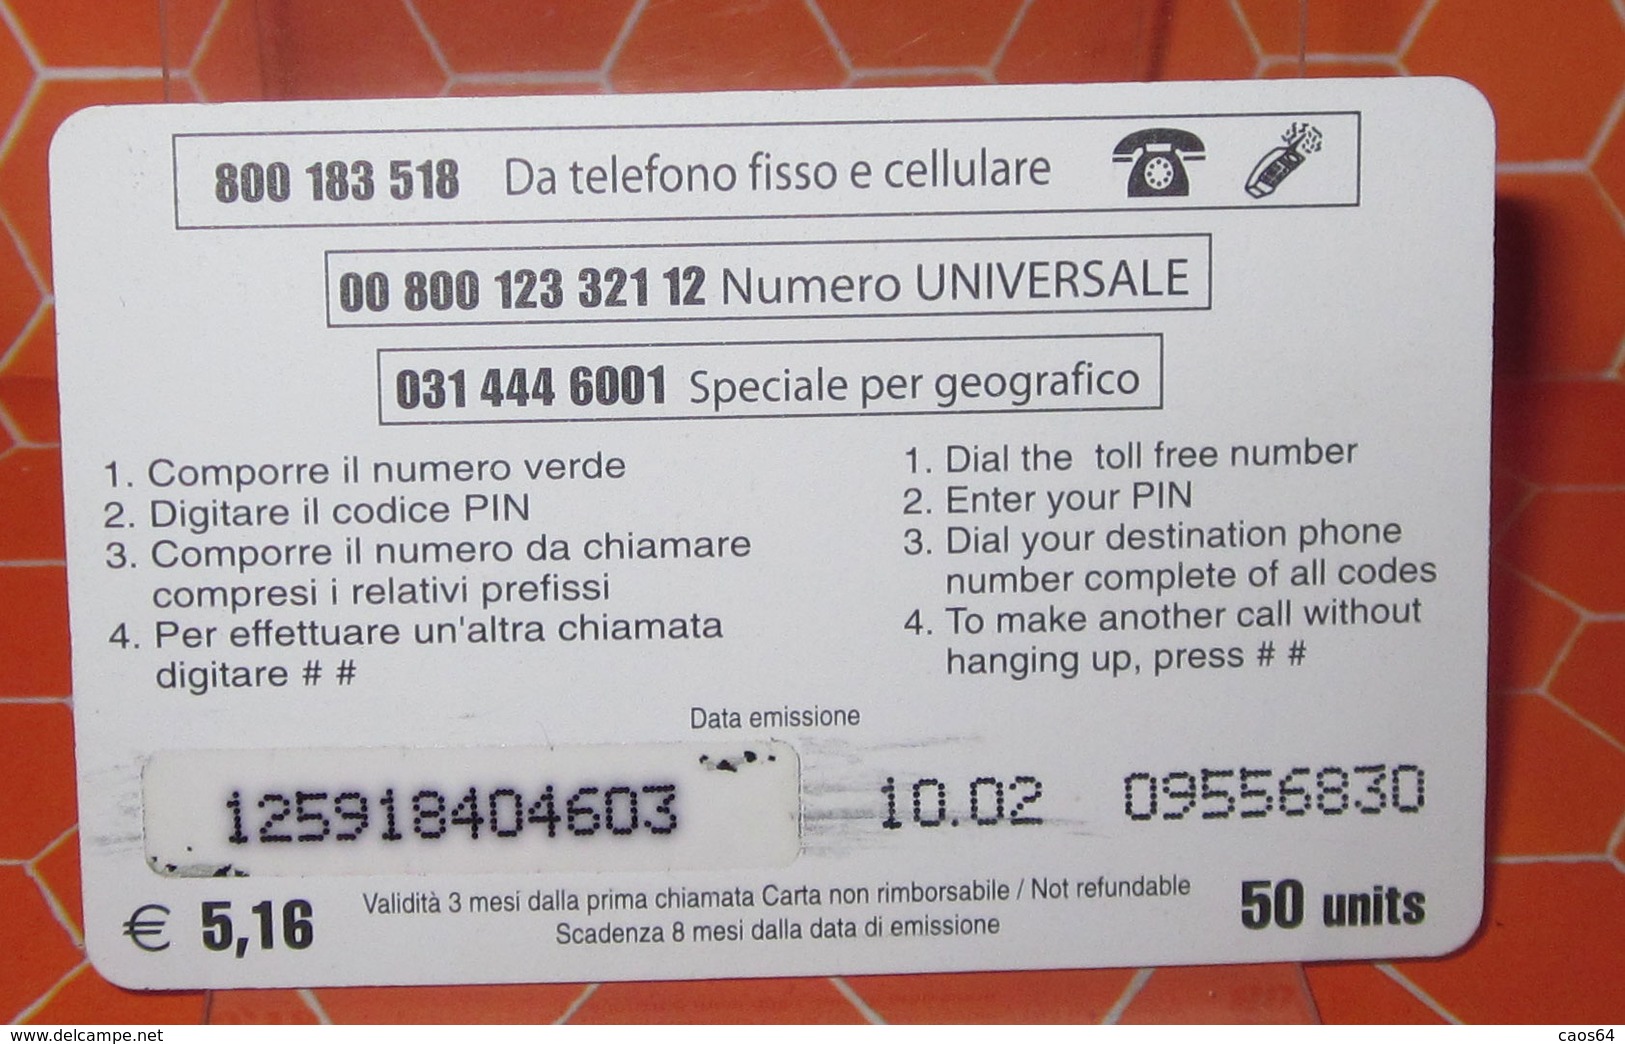 LION CARD 50 UNITS - Cartes GSM Prépayées & Recharges